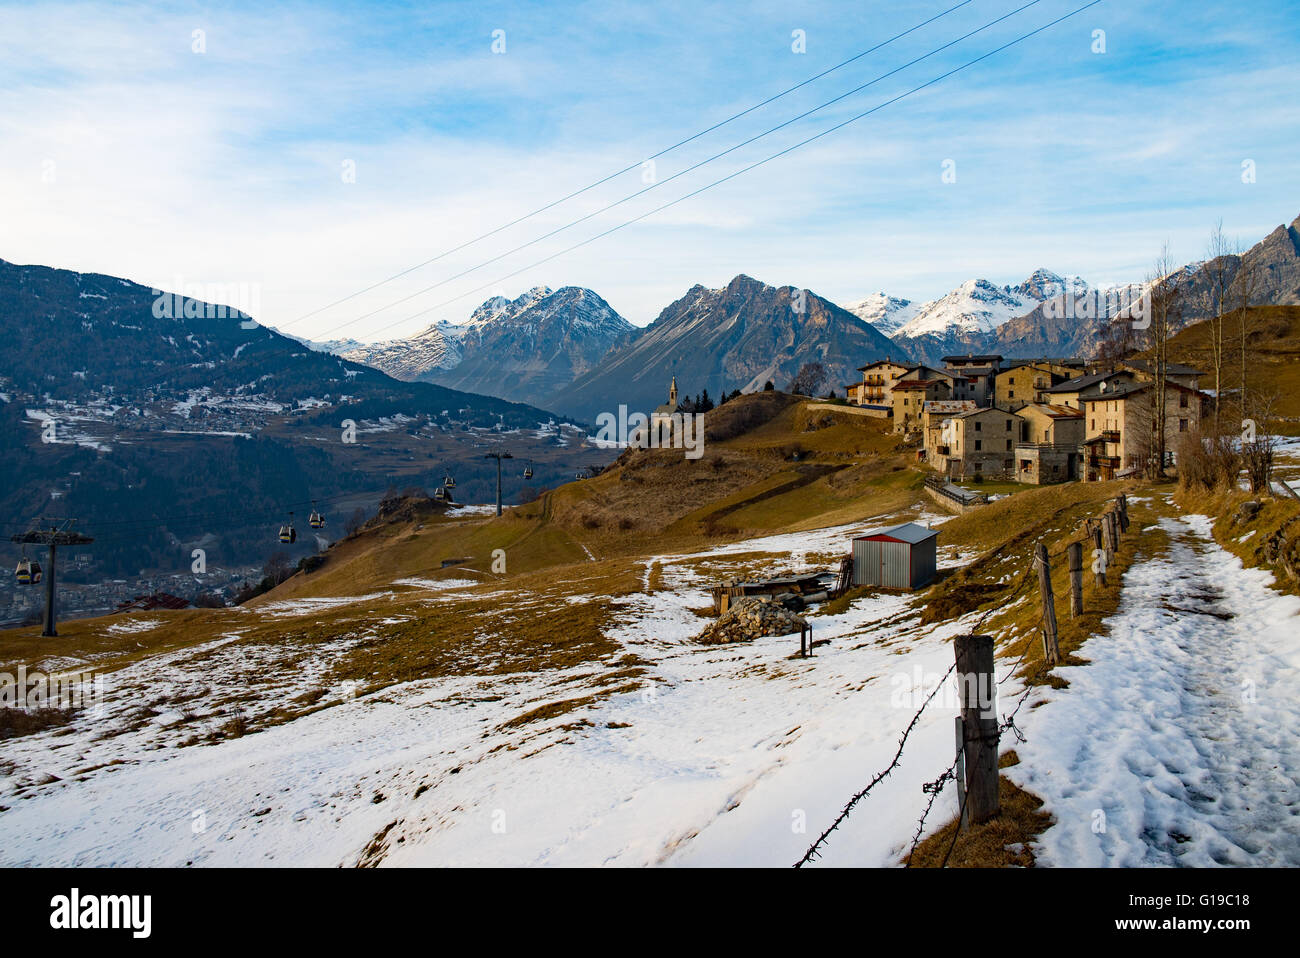 Paesaggio di montagna con la funivia, neve e case tipiche Foto Stock